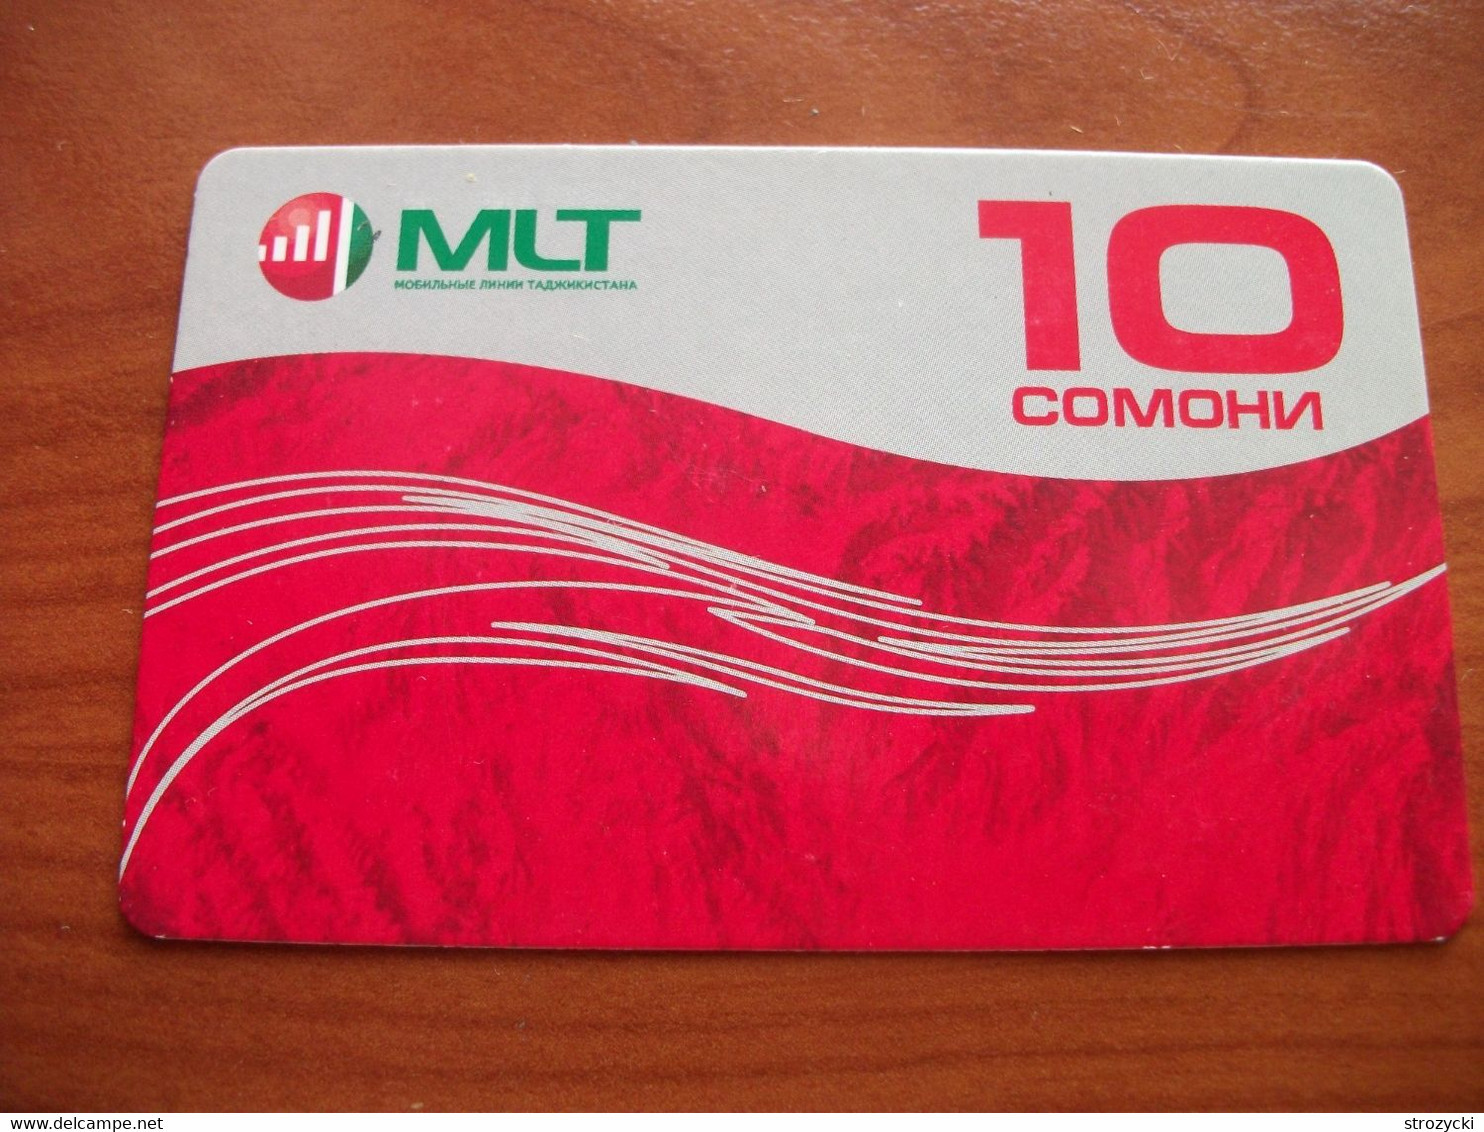 Tajikistan - MLT - 10SM - Tadjikistan